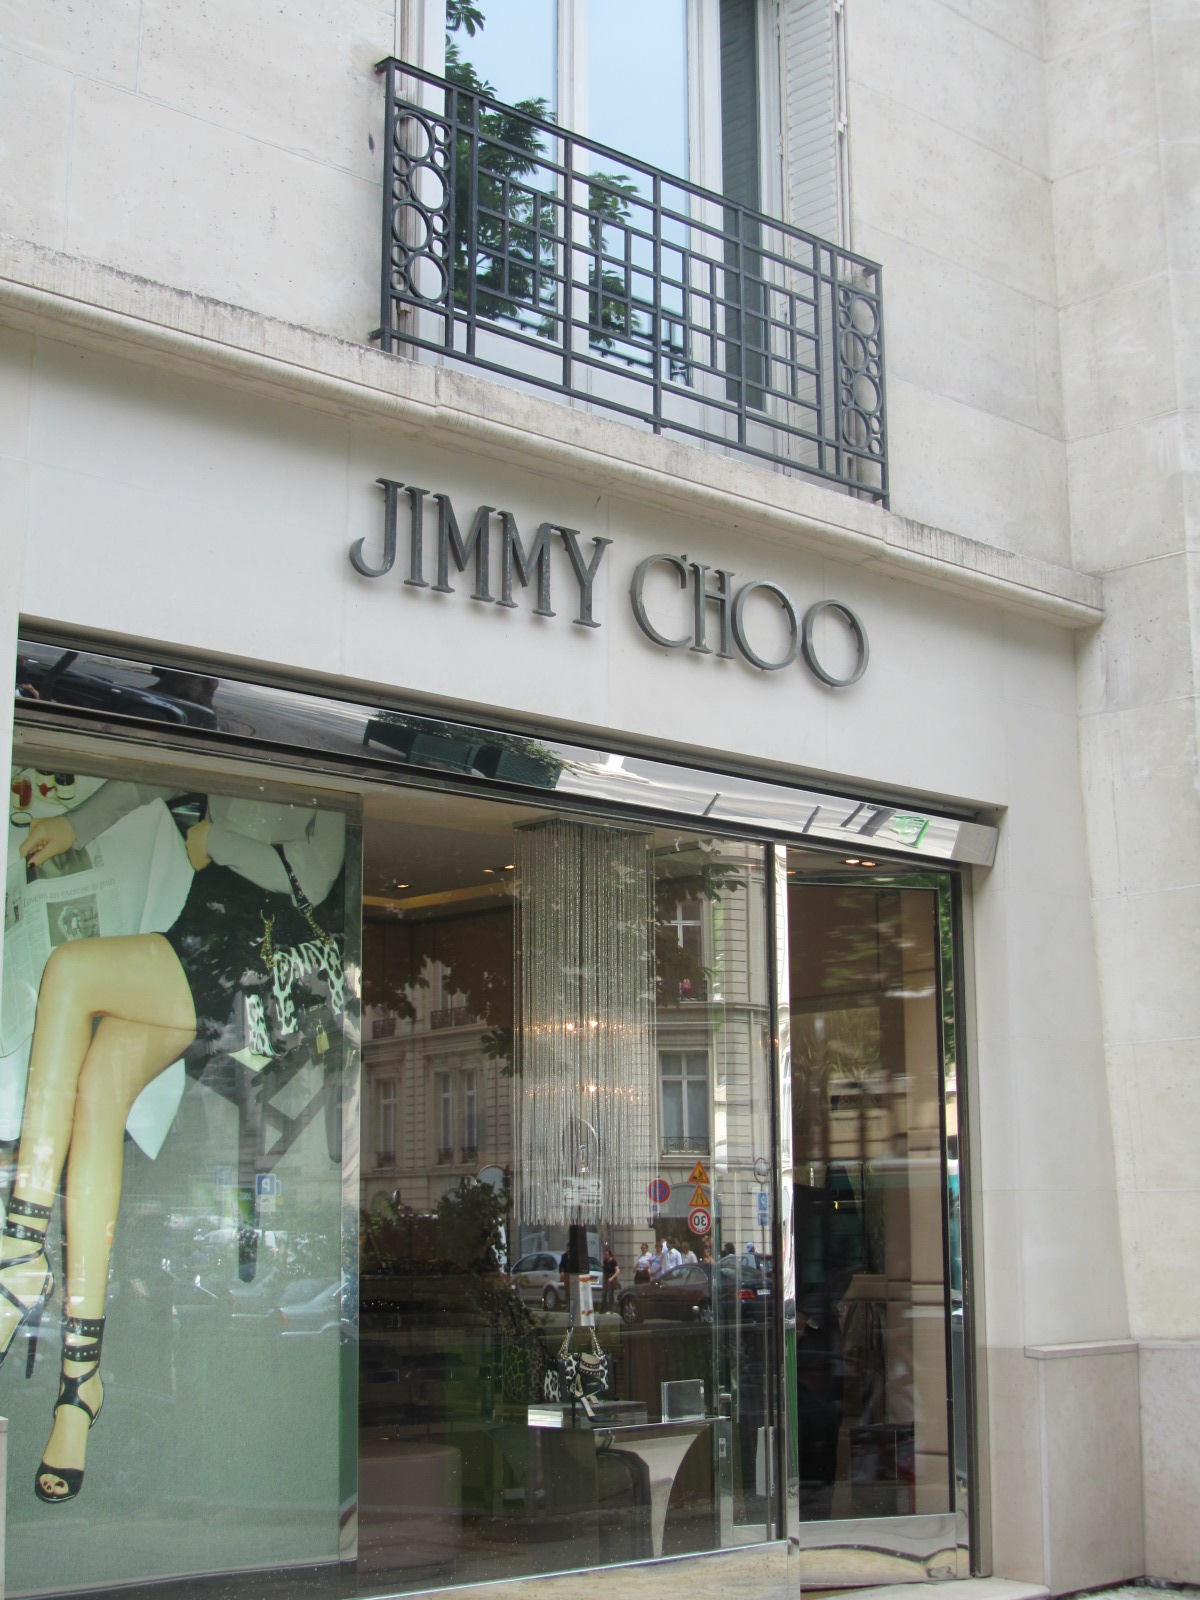 http://4.bp.blogspot.com/-Y073n81eI-0/TfPg3jE_w2I/AAAAAAAAAPM/W4c6edaAtes/s1600/Jimmy+Choo+Paris+Designer+shopping.jpg